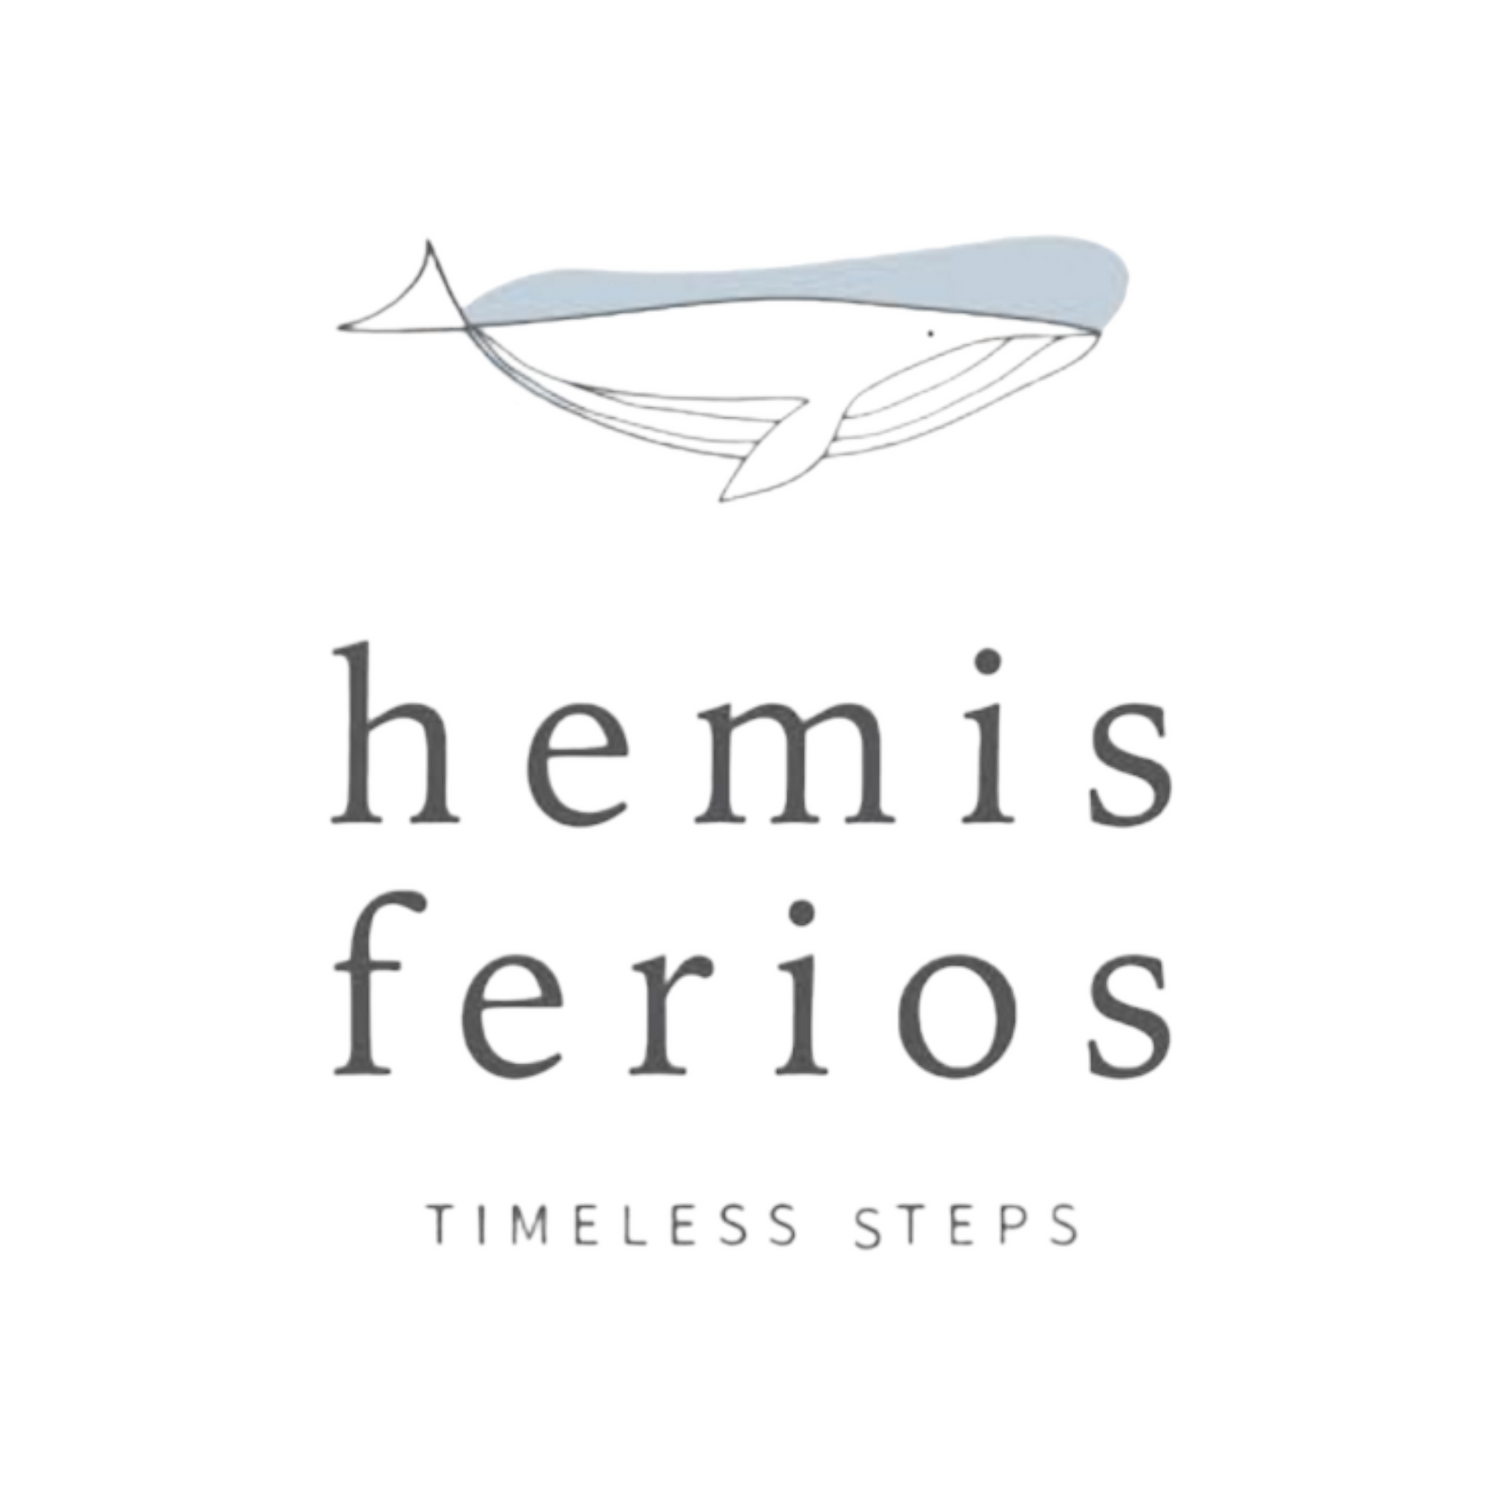 Hemis Ferios